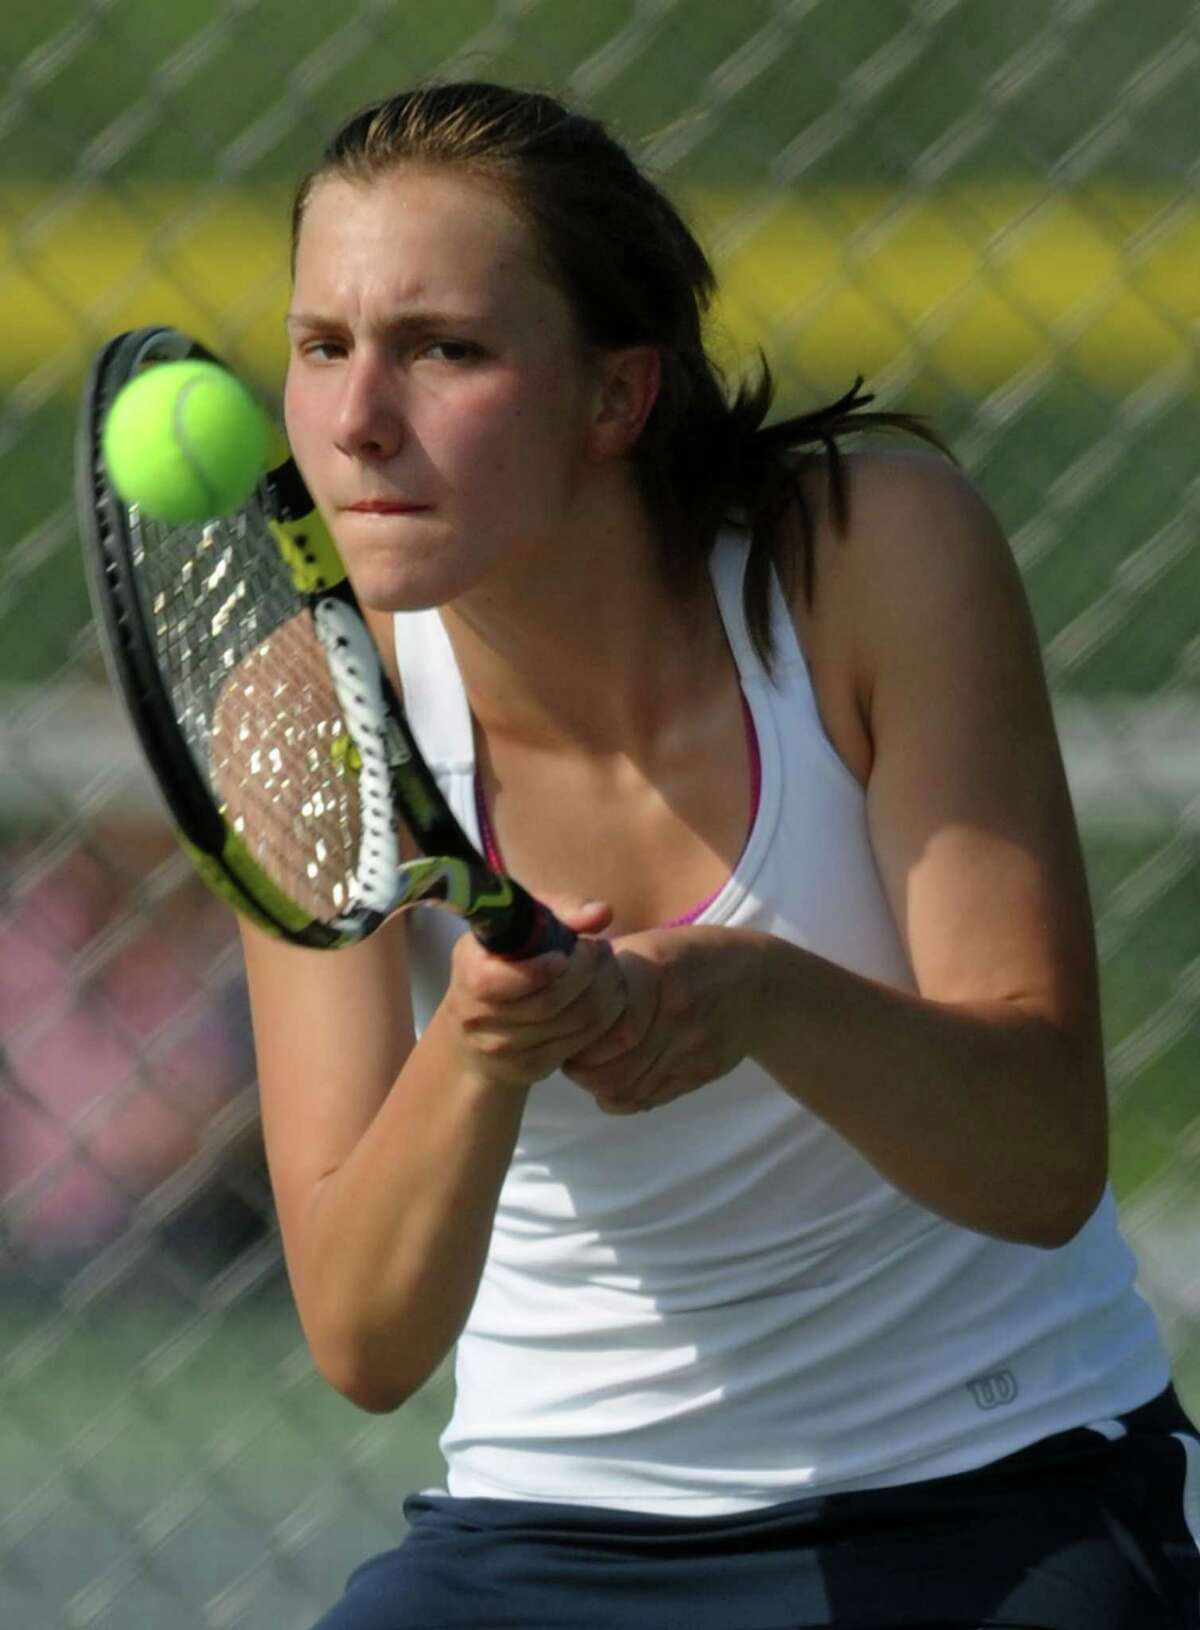 Newtown's Lauren Beier returns a shot in the high school girls tennis match between Newtown and Joel Barlow at Newtown High School in Newtown, Conn. Wednesday, May 14, 2014.